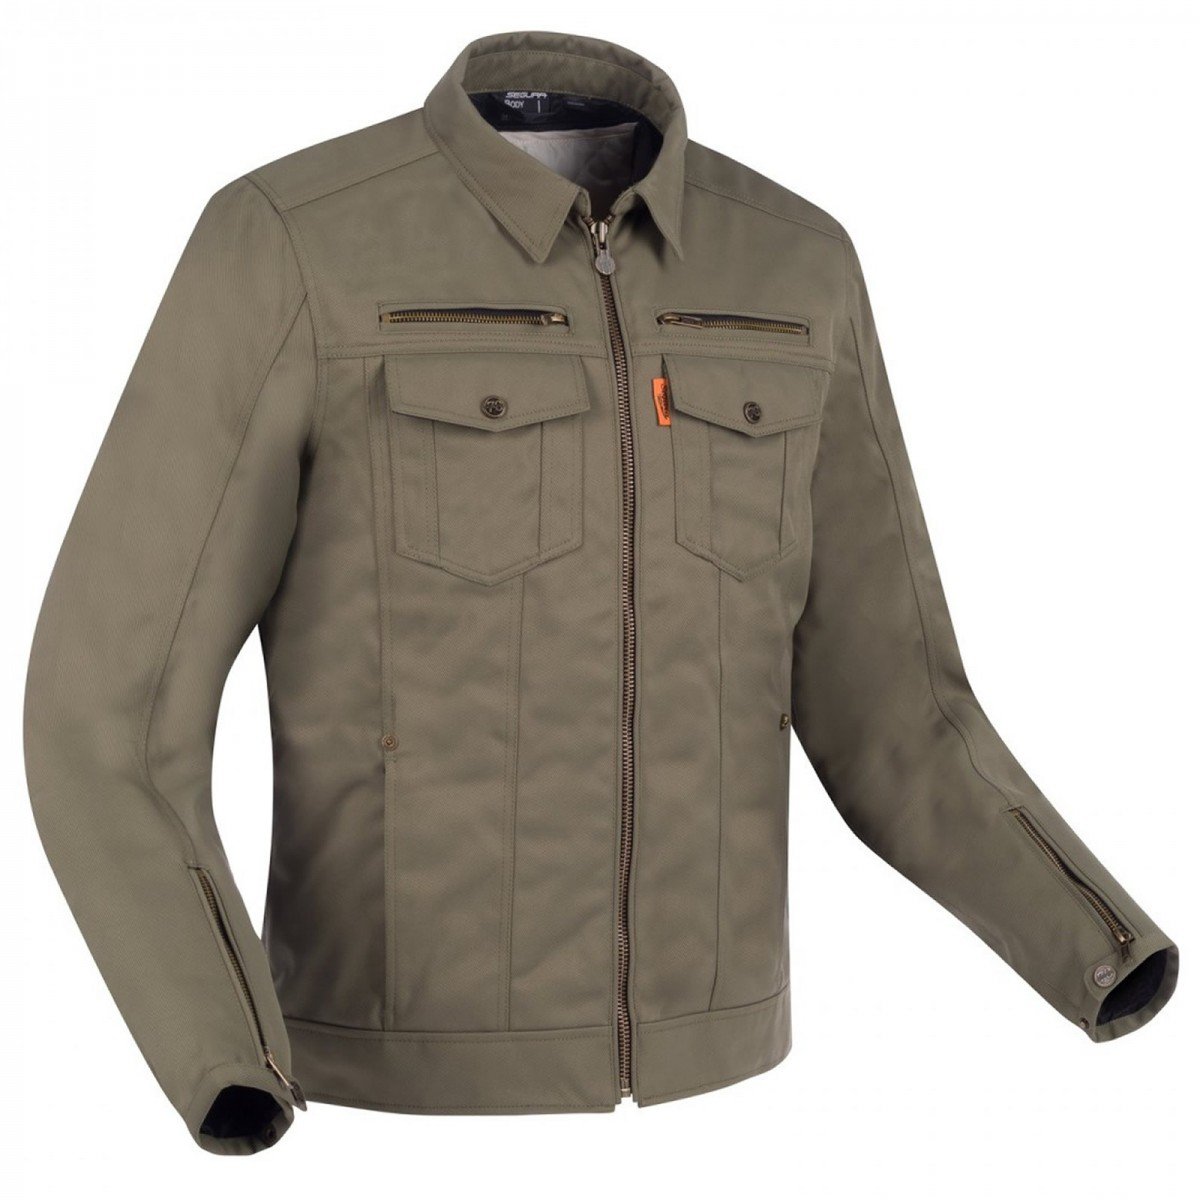 Image of Segura Patrol Jacket Khaki Size 2XL ID 3660815163078